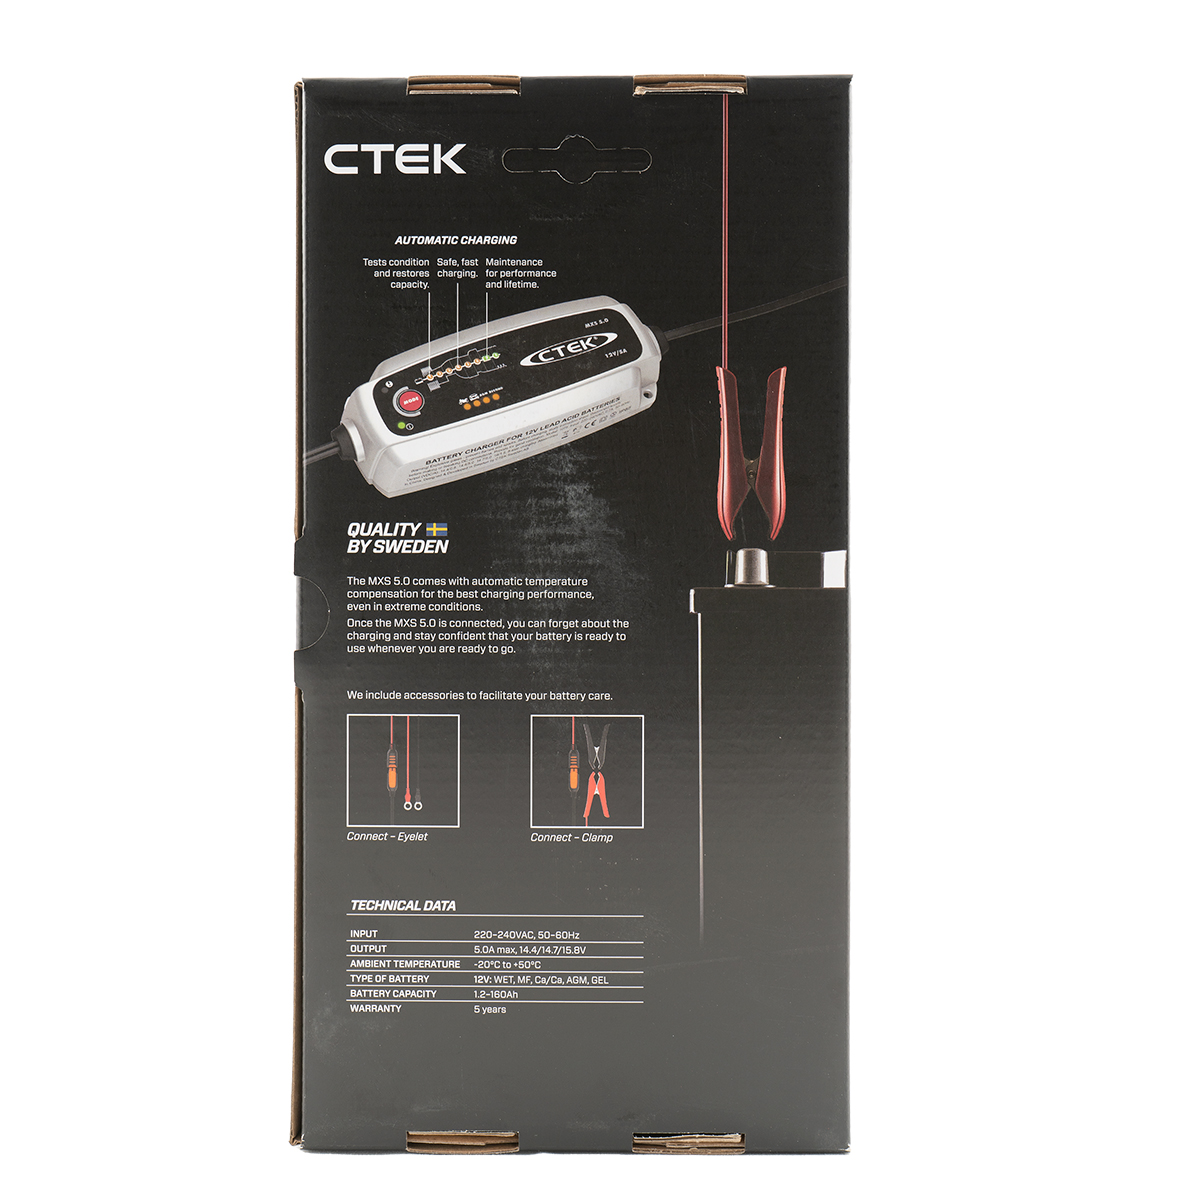 CTEK MXS 5.0 Batterie-Ladegerät 12V 5A